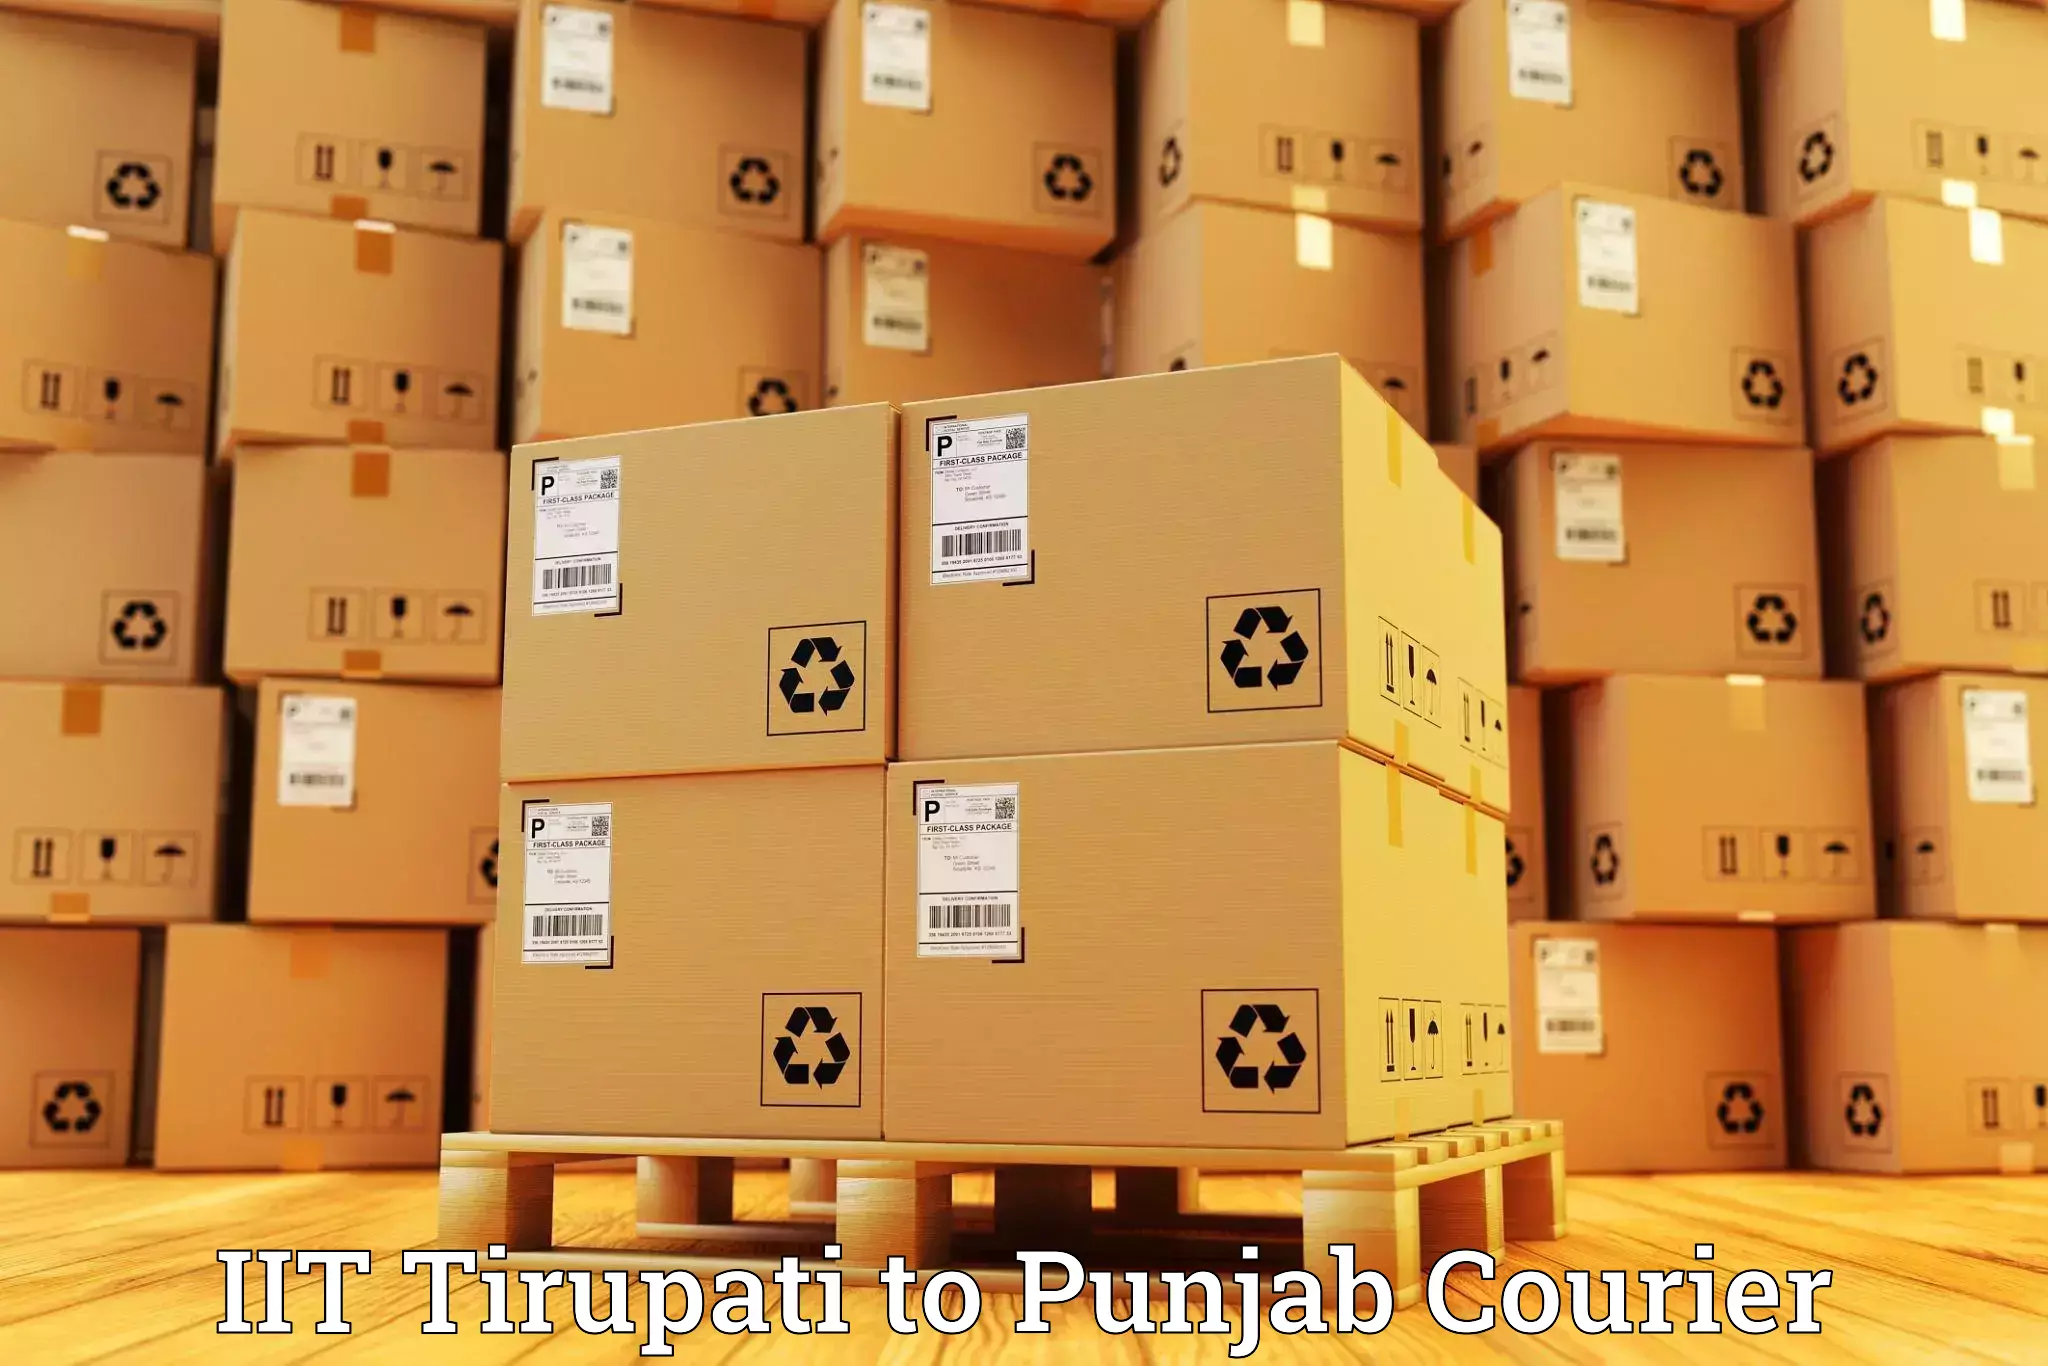 Door-to-door freight service IIT Tirupati to Punjab